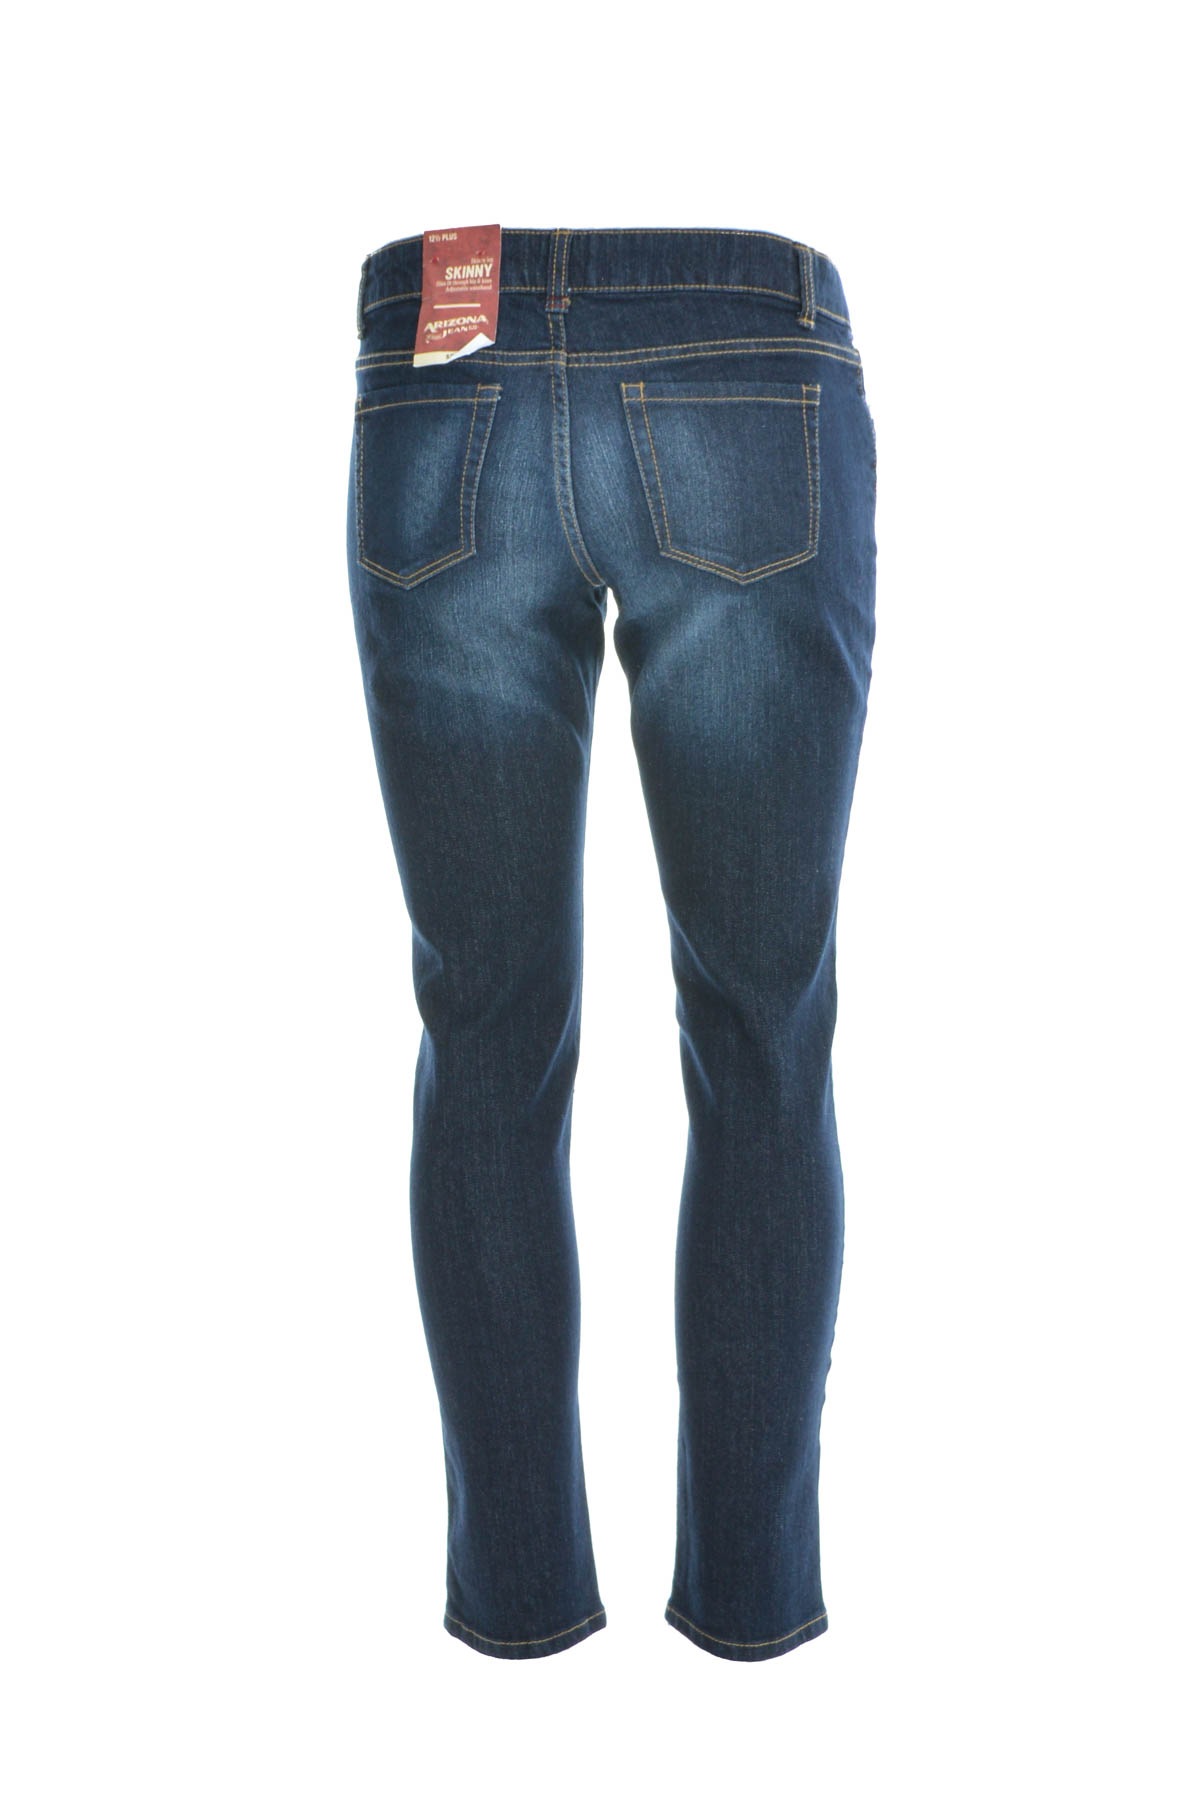 Girl's jeans - ARIZONA JEAN CO - 1